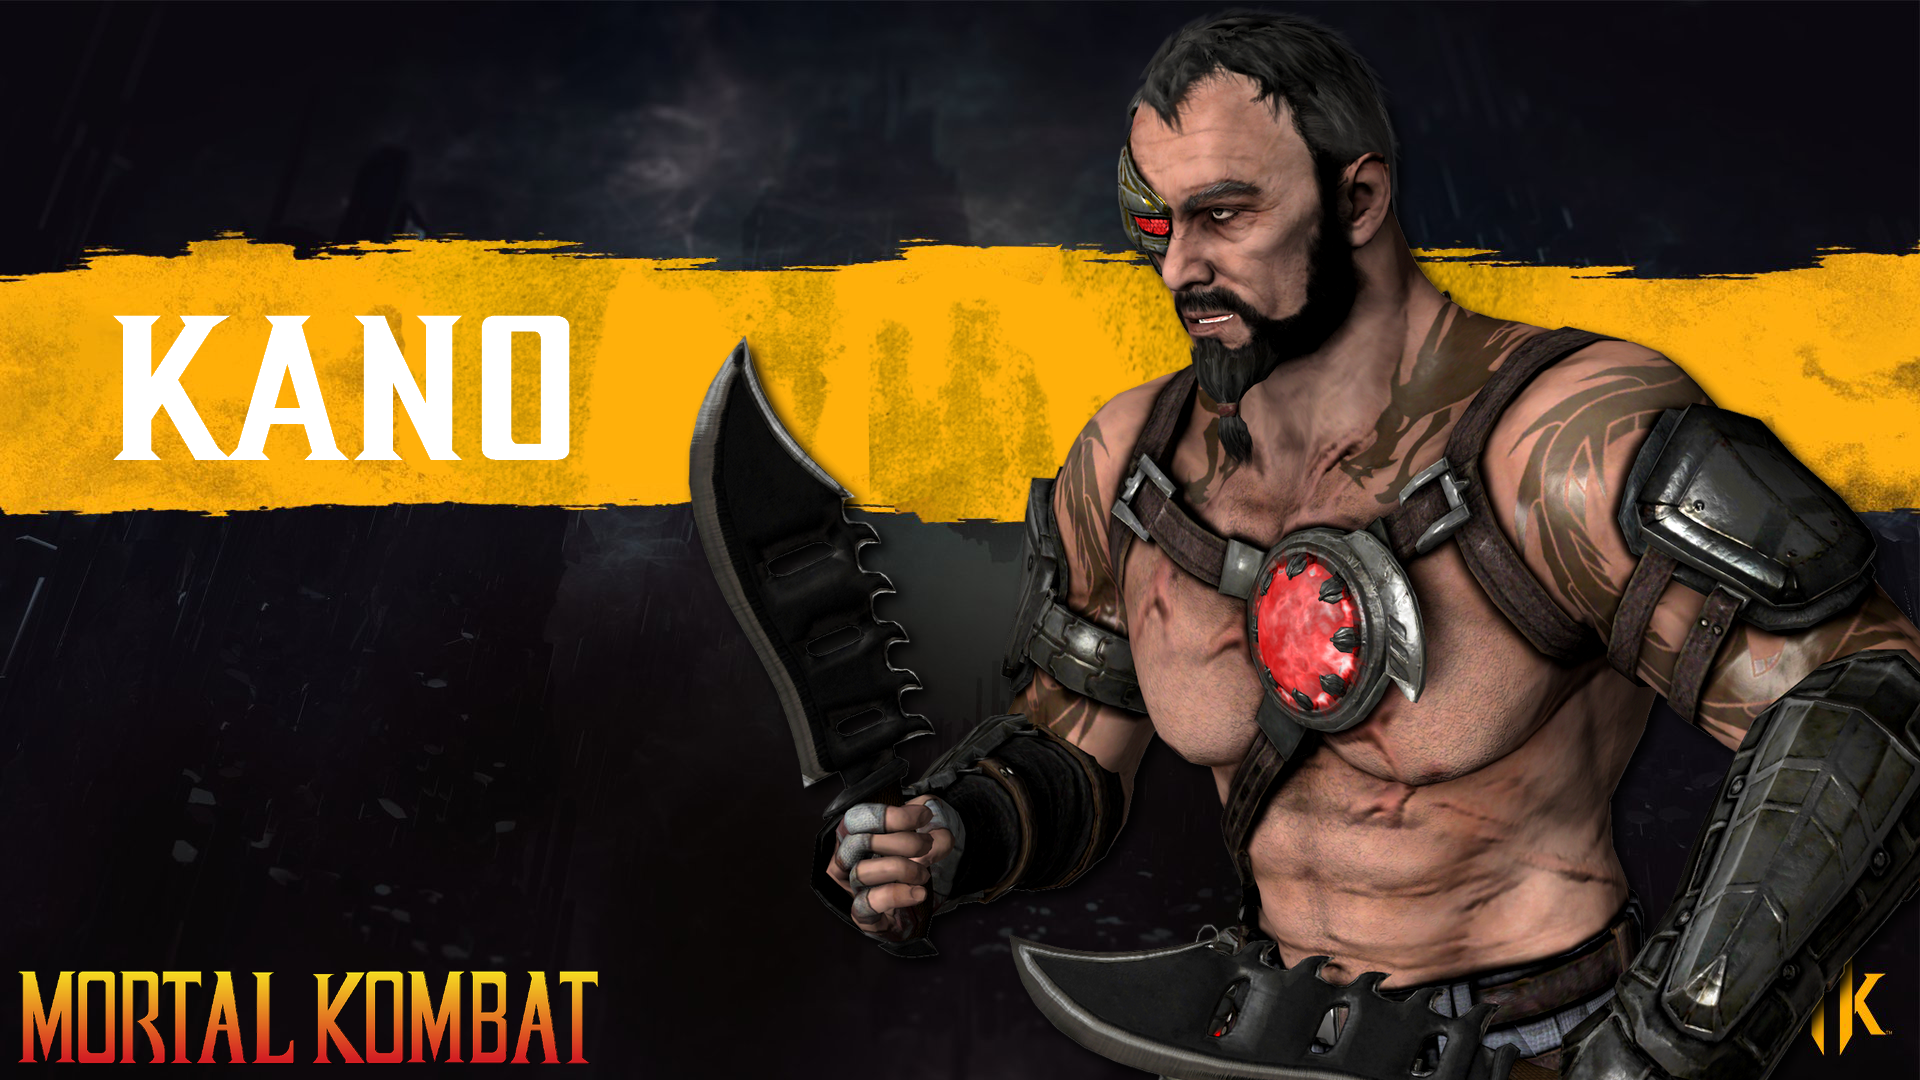 Kano Mortal Kombat 11  Mortal kombat, Mortal kombat characters, Mortal  kombat ultimate